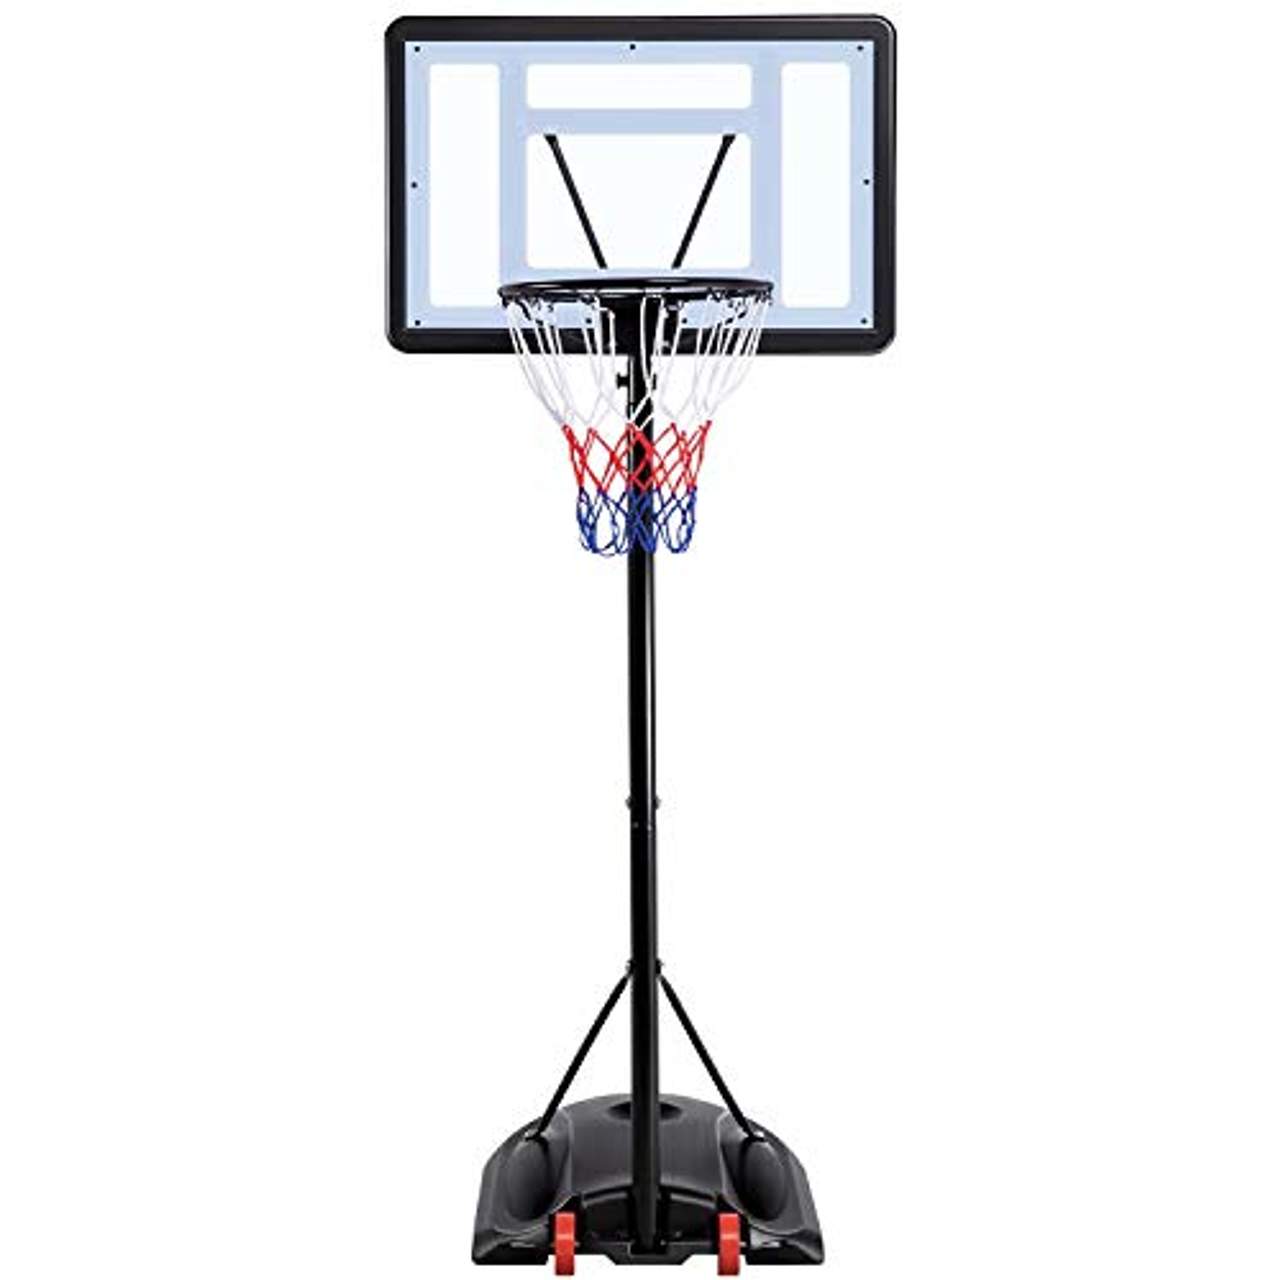 Yaheetech Basketballständer Basketballkorb mit Rollen Basketballanlage Höhenverstellbar Korbanlagen